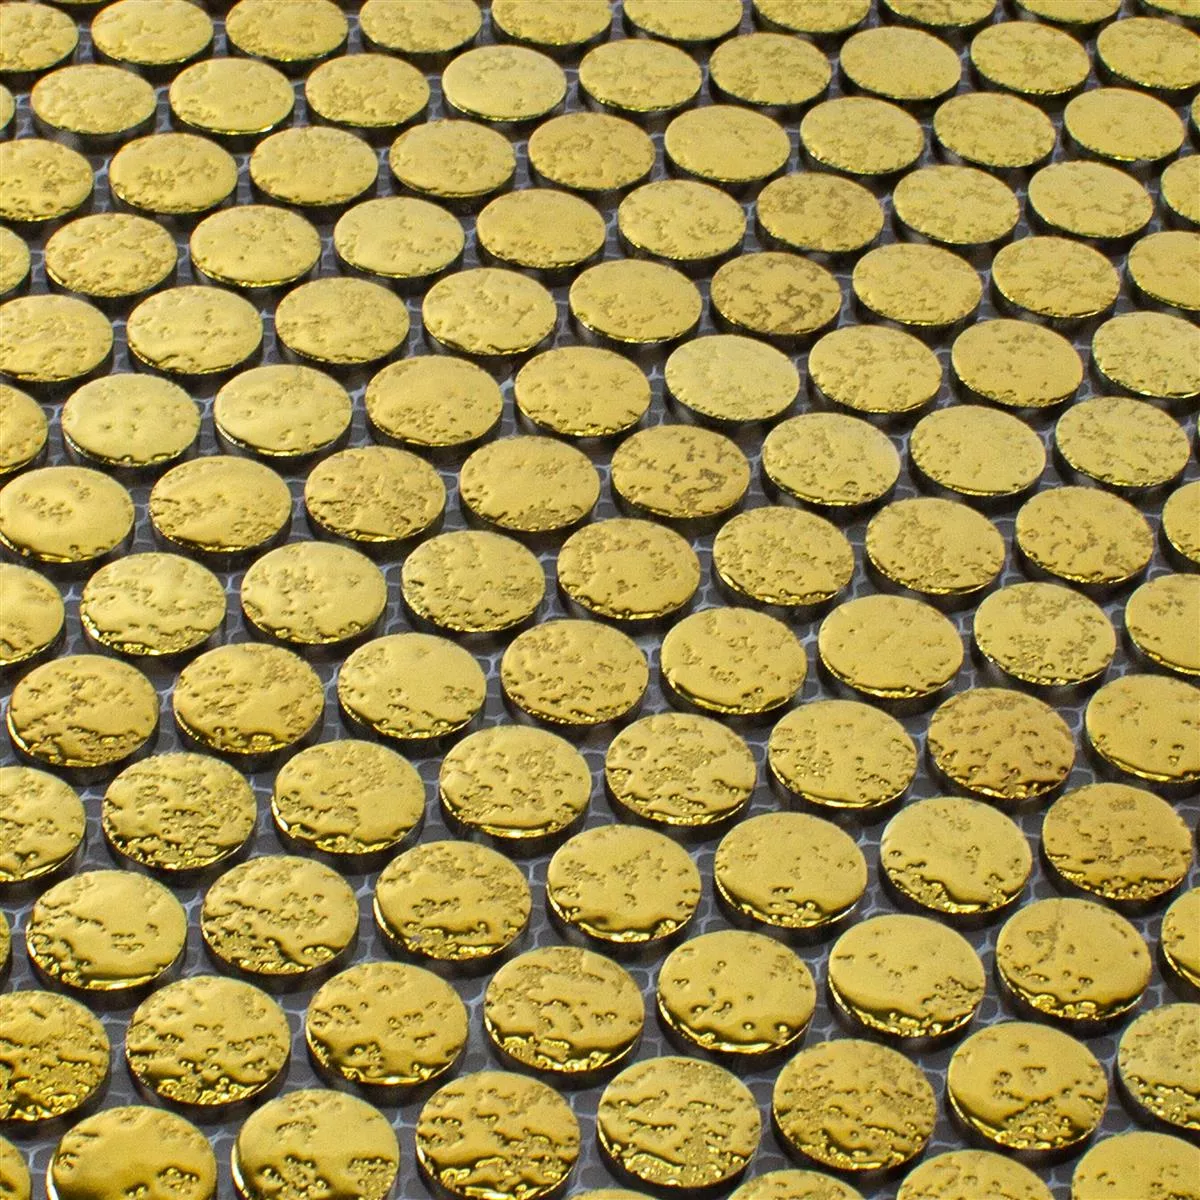 Sample Ceramic Button Effect Mosaic Tiles Meneksche Gold